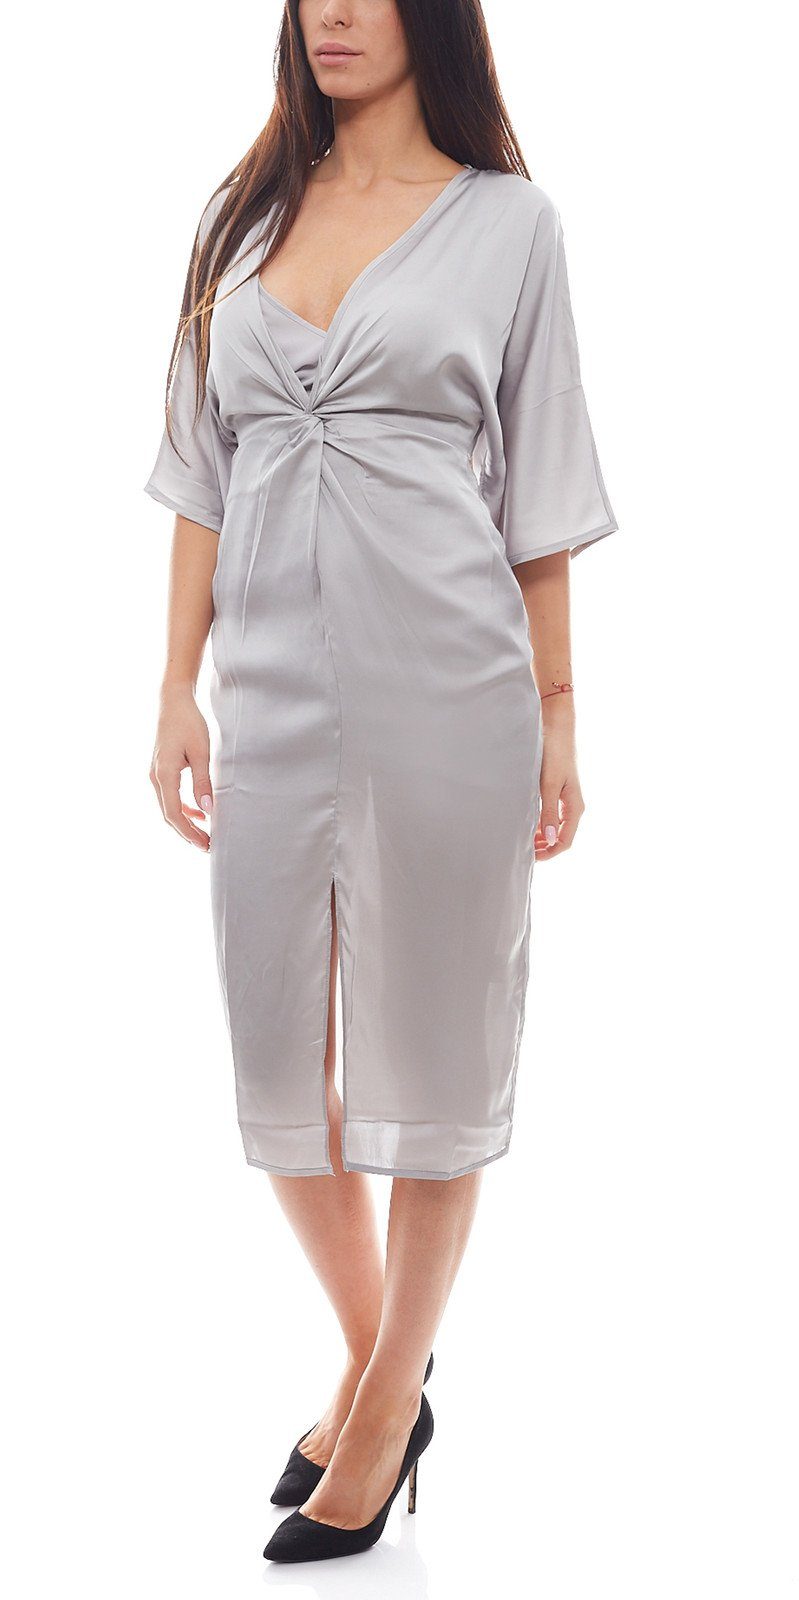 Silber Party-Kleid NA-KD in x NA-KD Satin-Optik Licious Damen Partykleid stylisches Kimono-Kleid Midi-Kleid Hanna